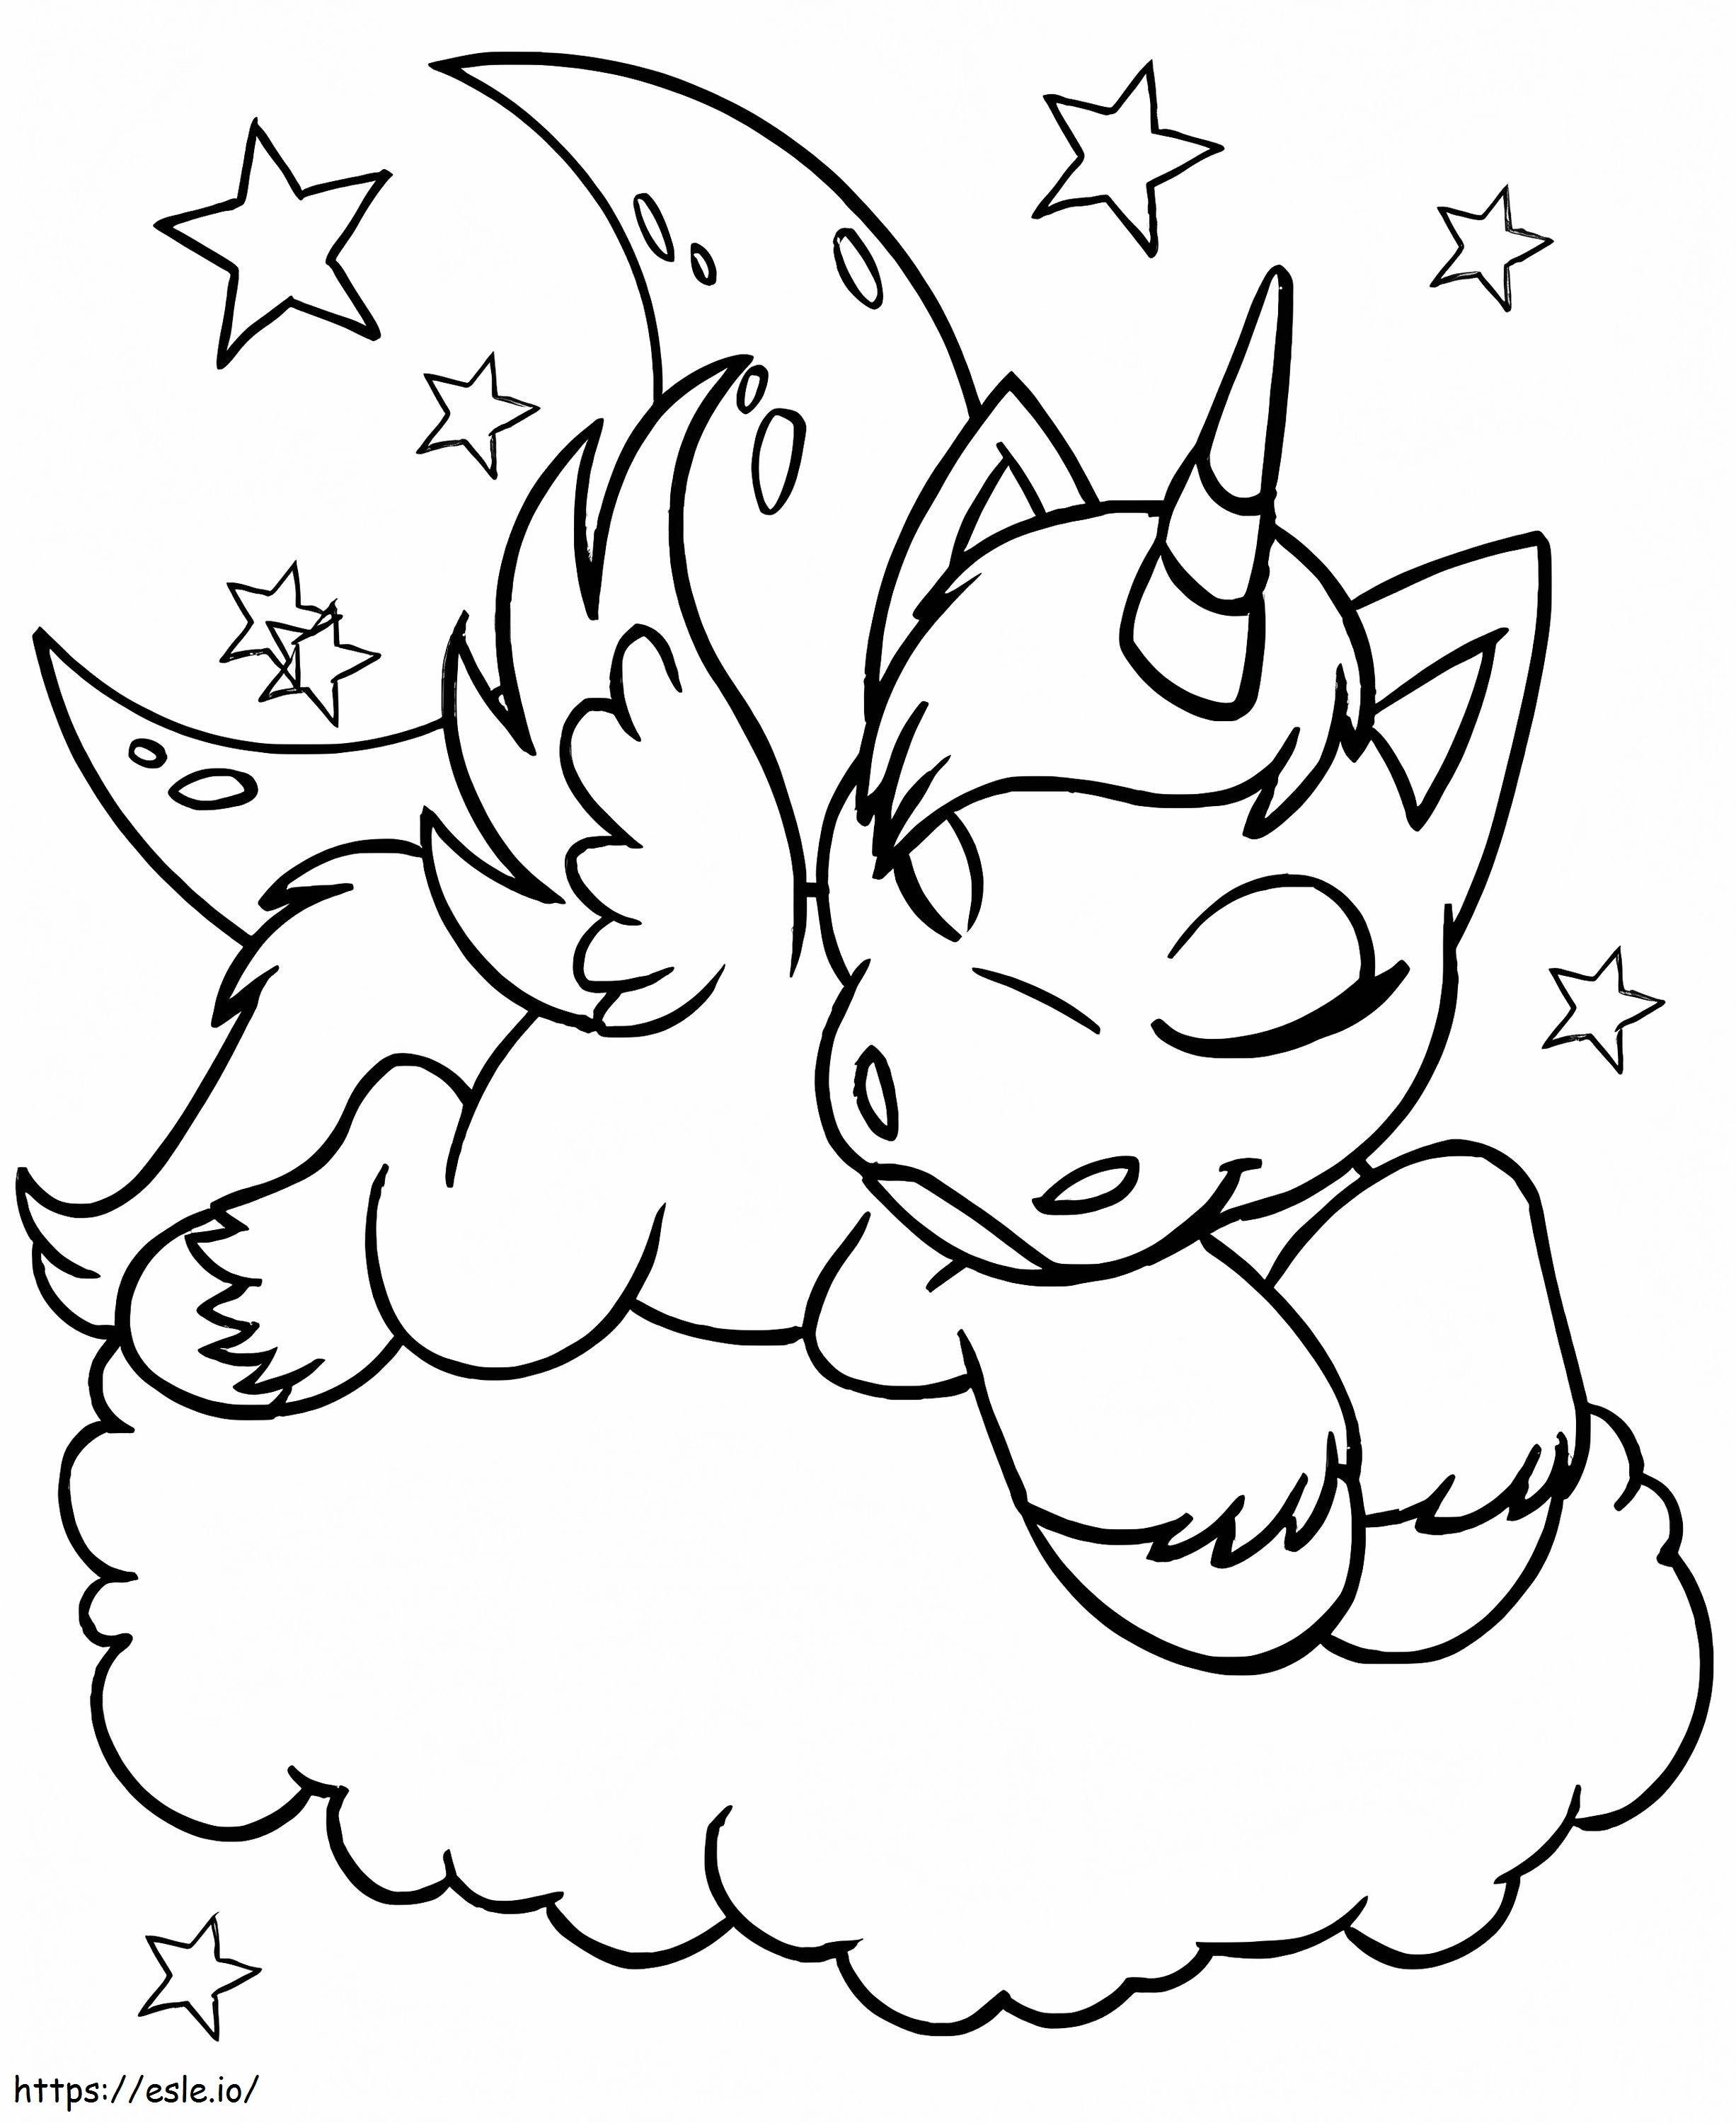 Unicorn Free 654X800A4 coloring page